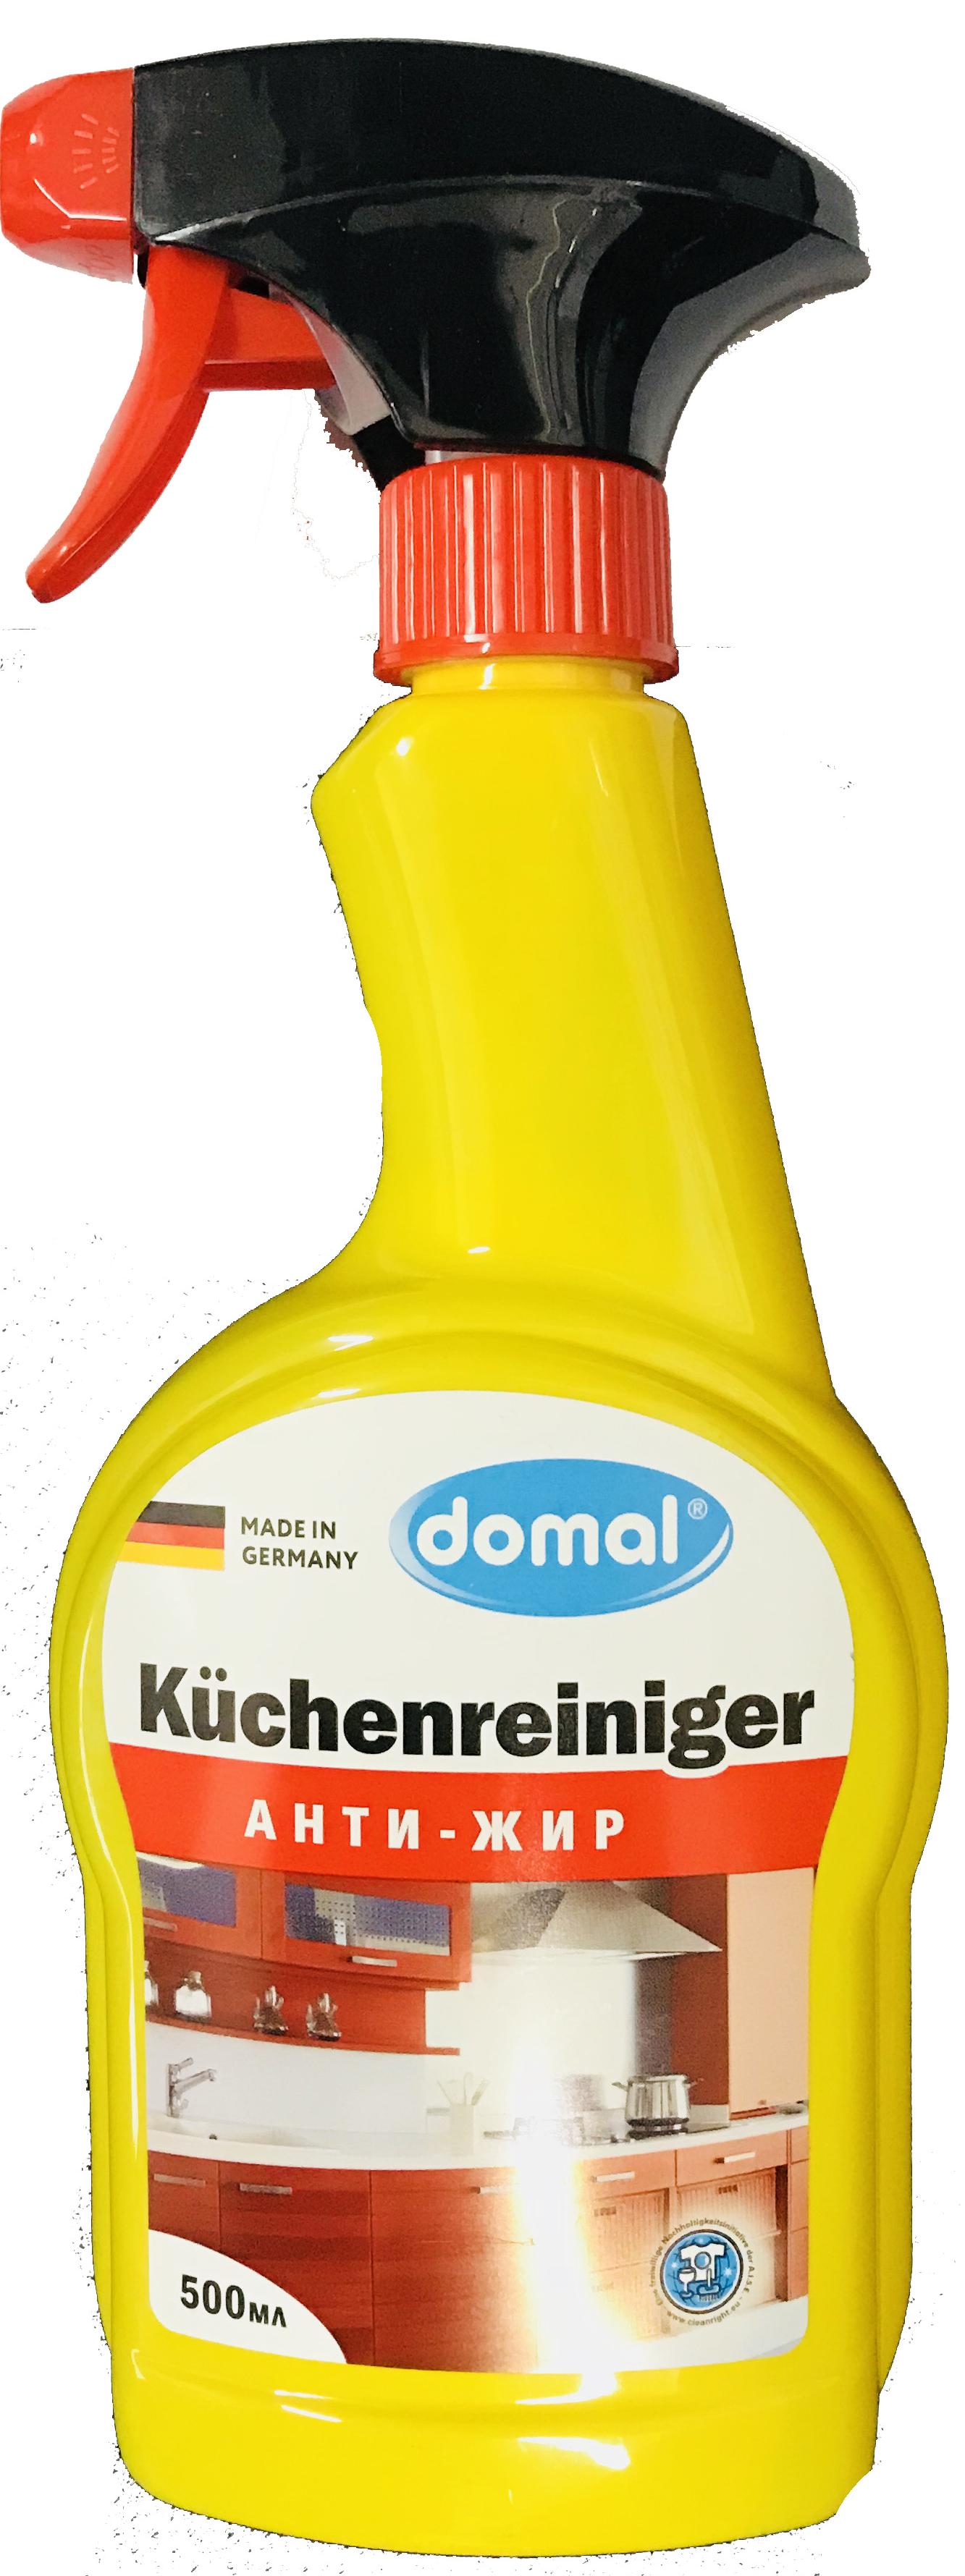 Domal Kuchenreiniger Анти-жир Средство для чистки кухонных поверхностей и предметов с активным растворителем жира 500 мл с распылителем